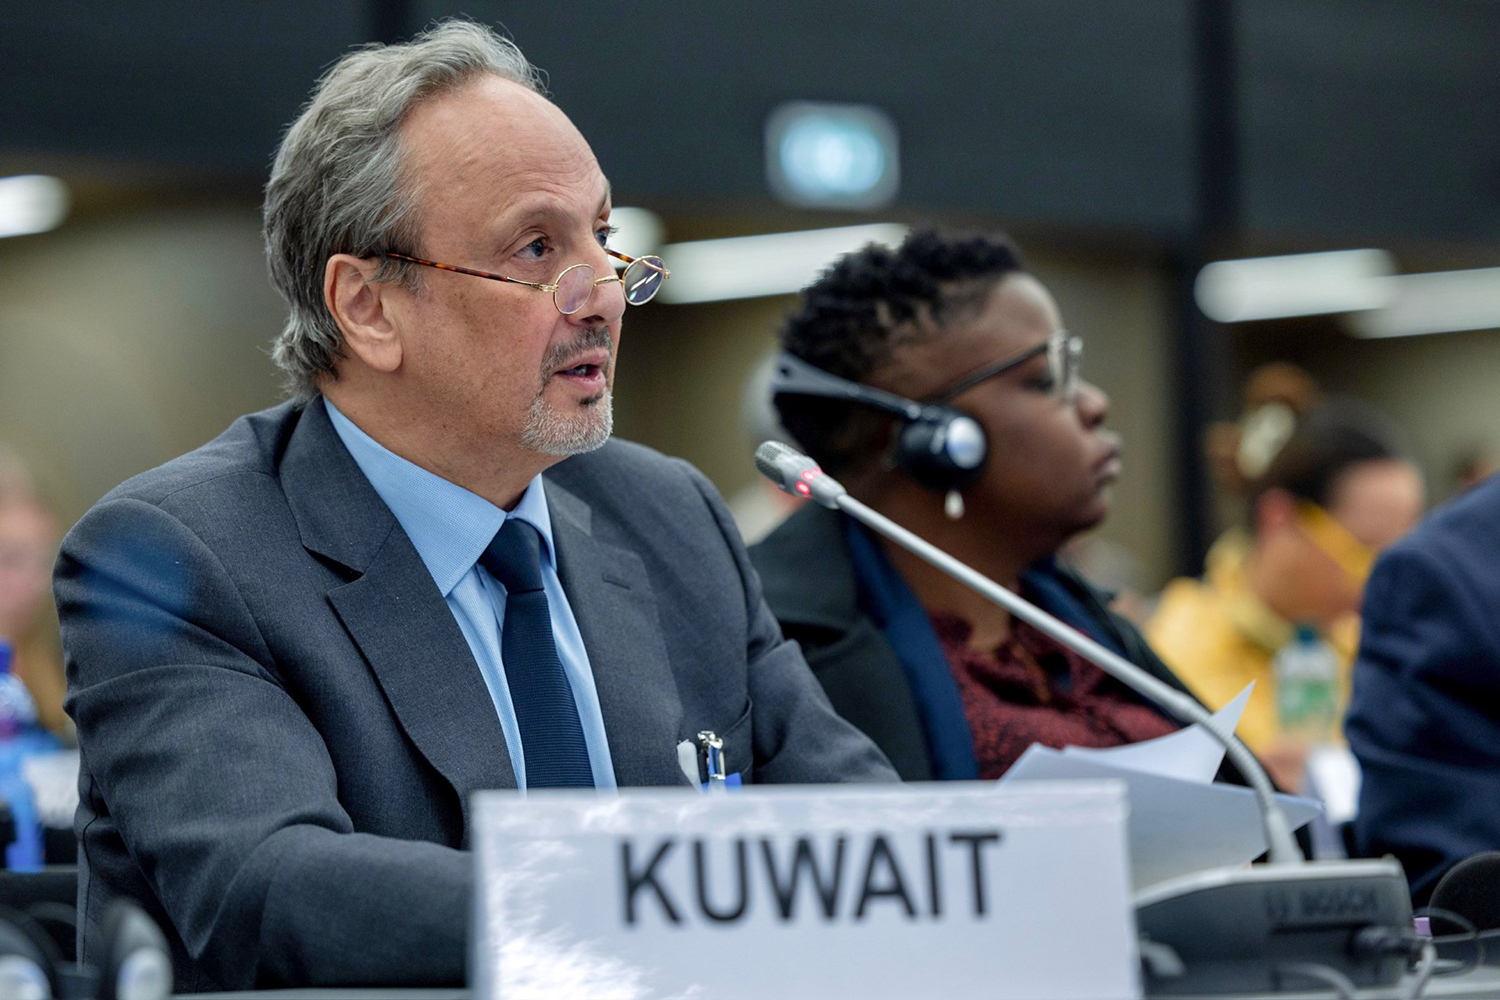 وزير الخارجية يترأس وفد دولة الكويت في المنتدى العالمي للاجئين 2023 بجنيف ويلقي كلمة في أعماله